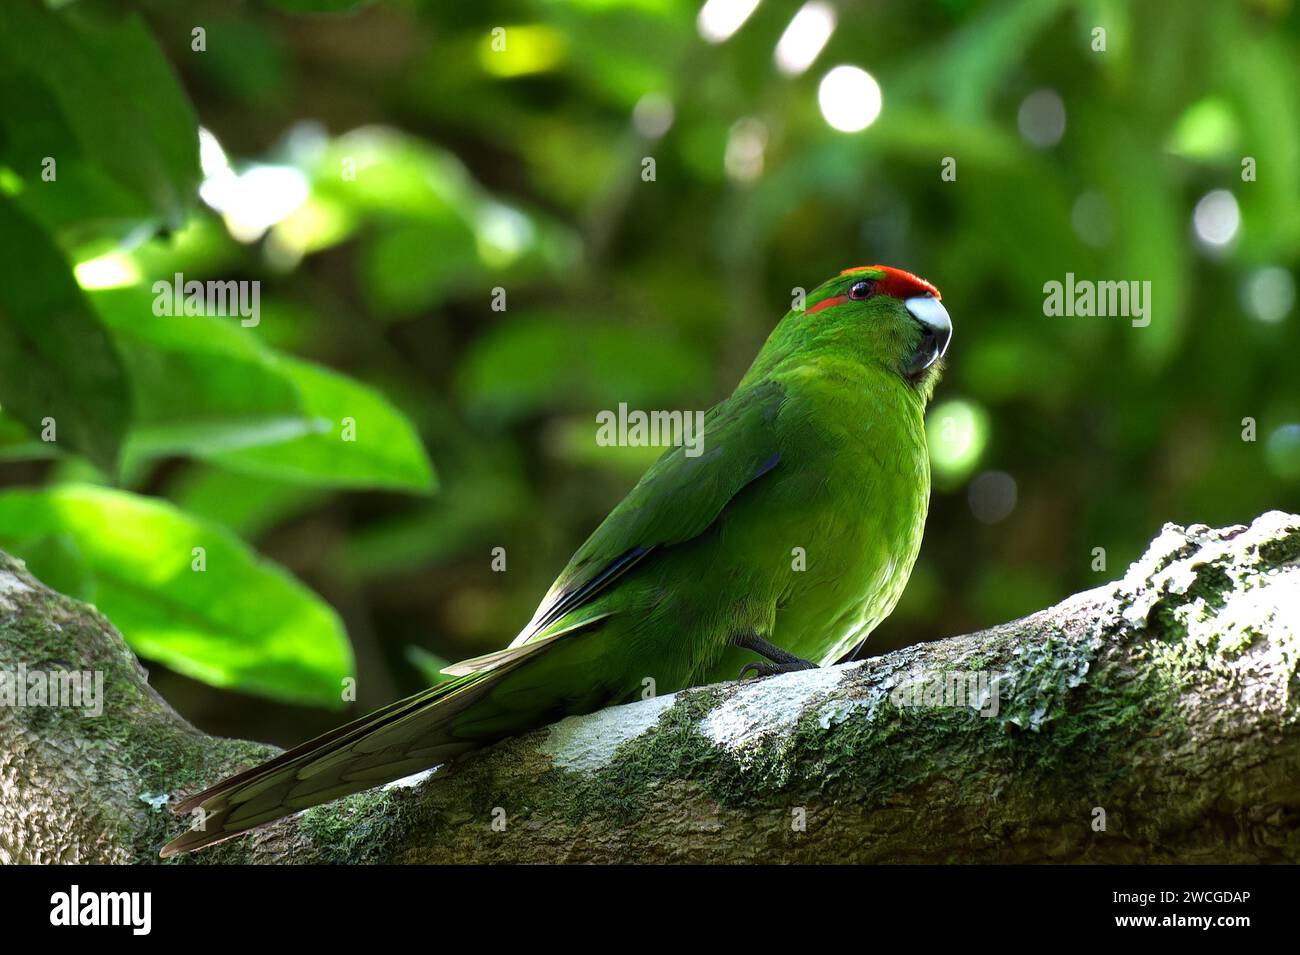 Kākāriki, New Zealand's Red-crowned parakeet Stock Photo